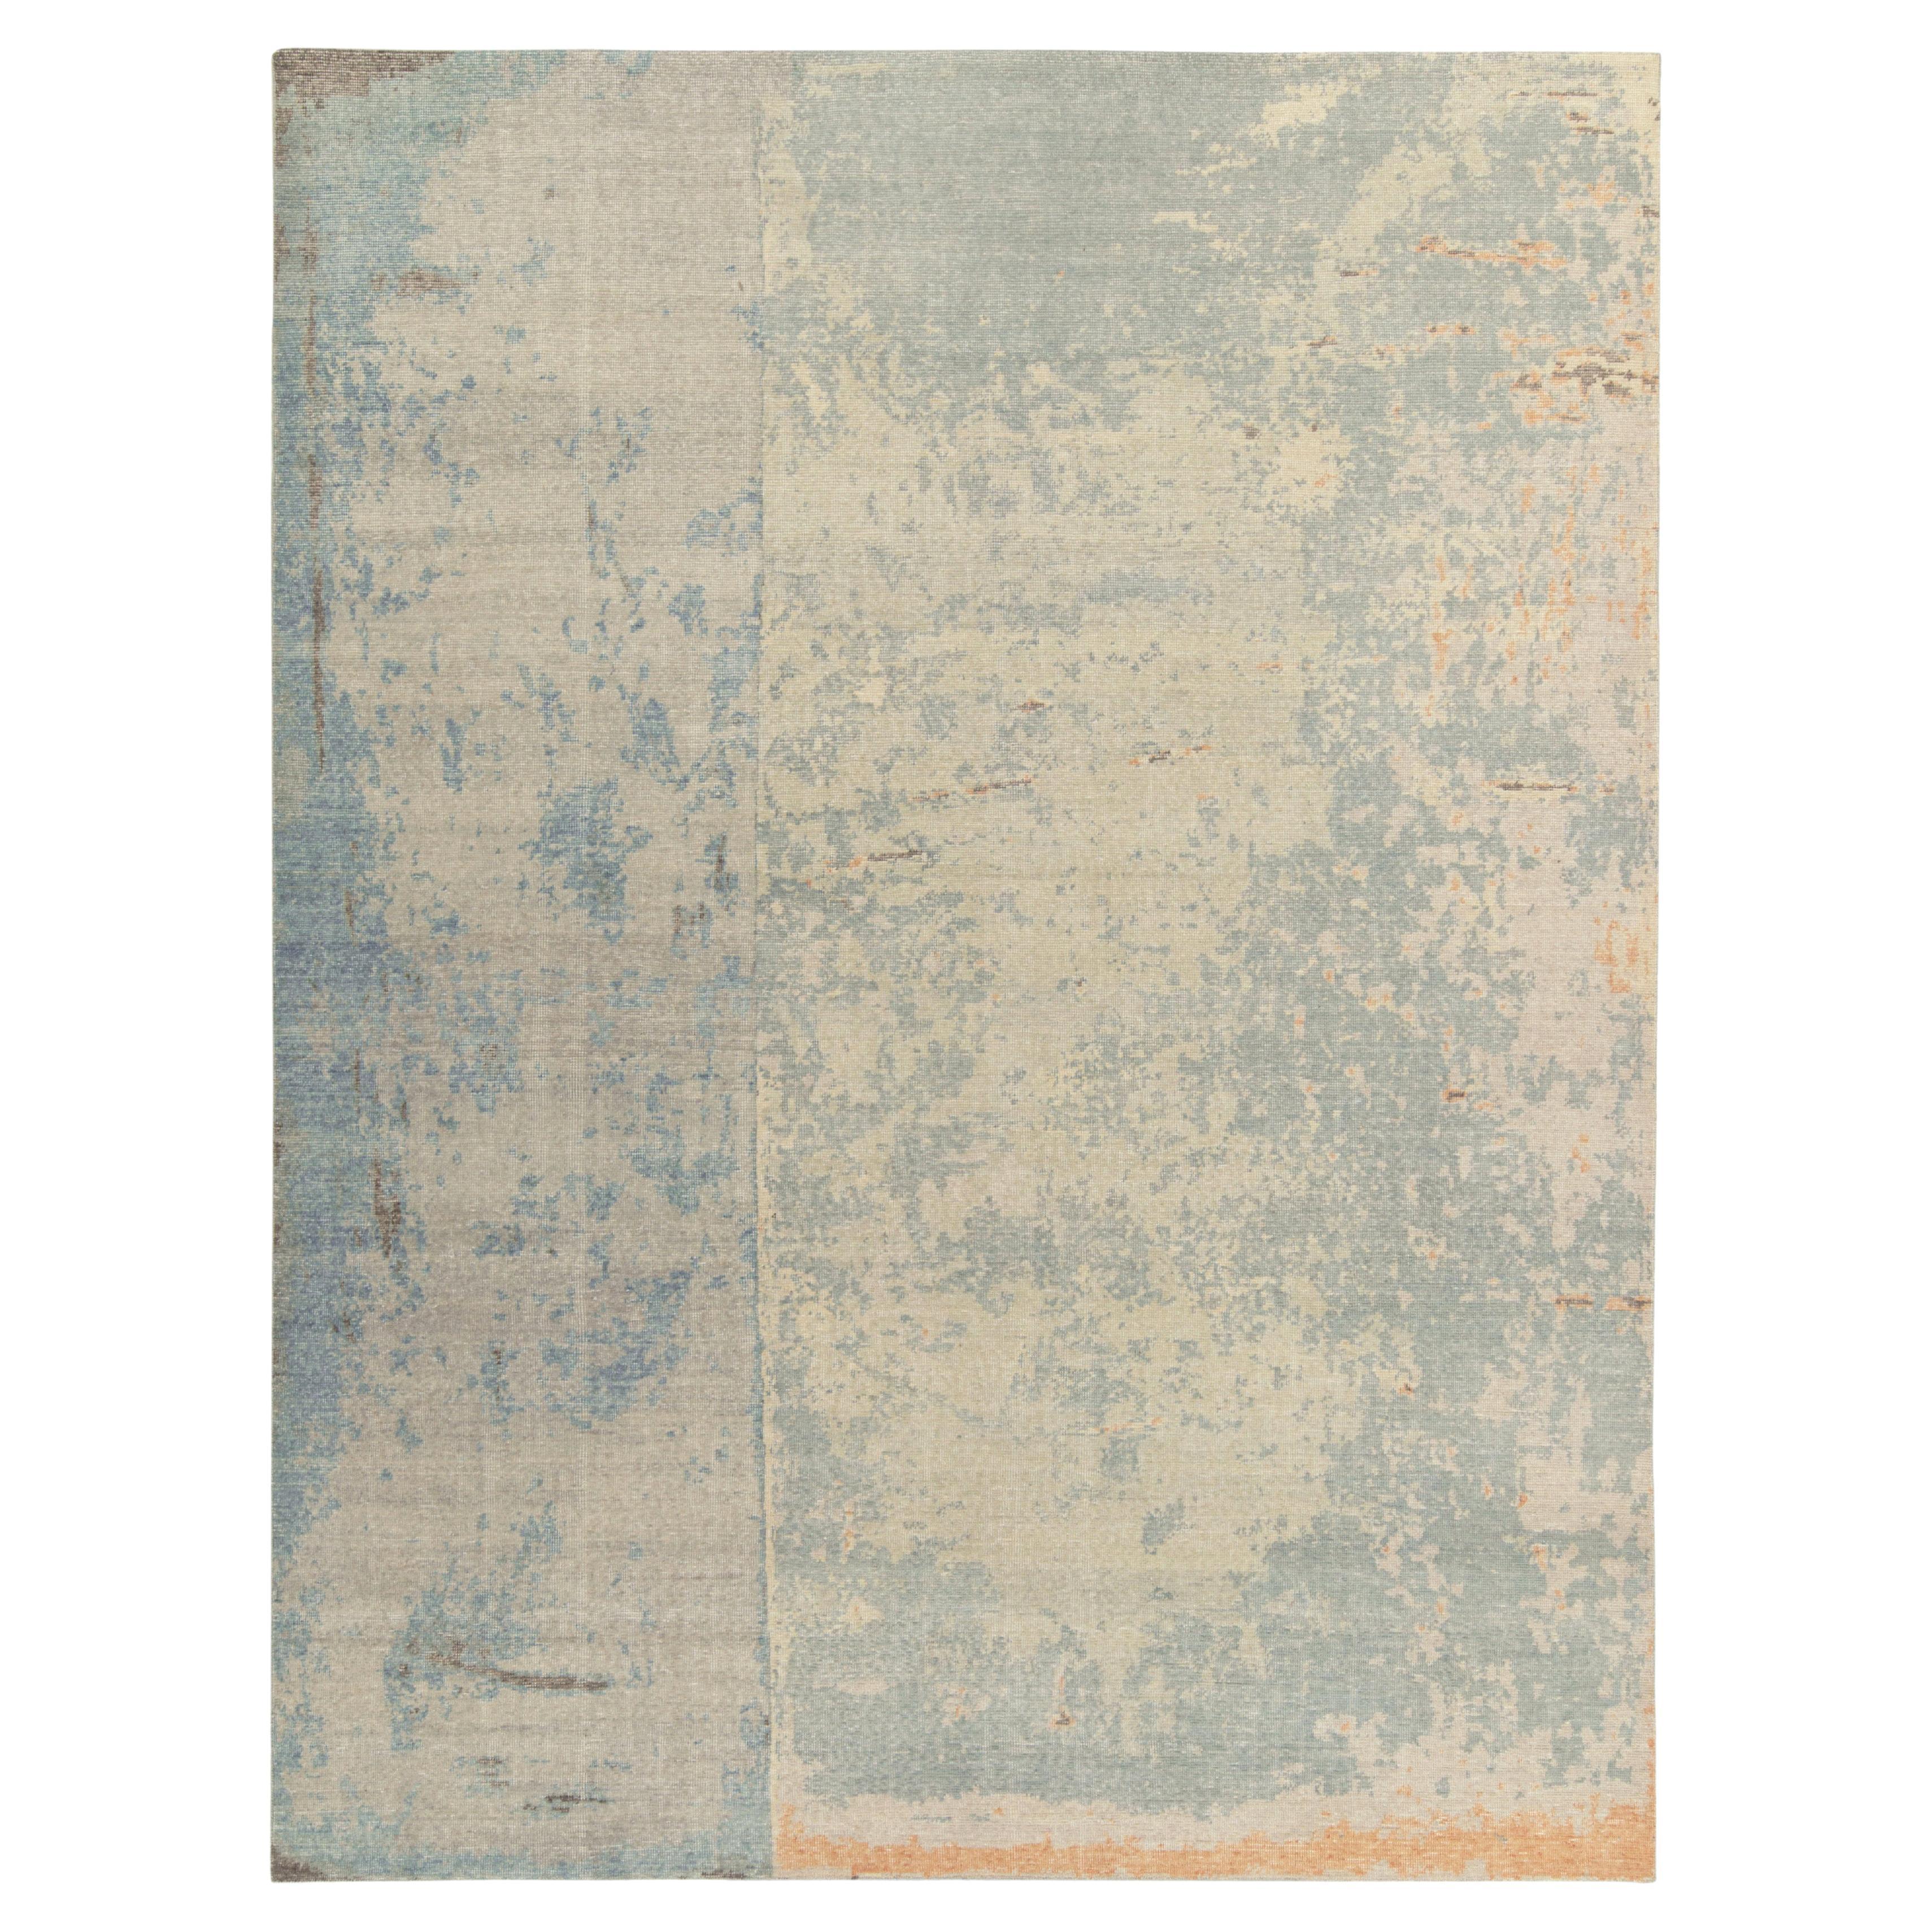 Teppich & Kelim''s Distressed Style Moderner Teppich in Blau, Grau, Beige mit abstraktem Muster